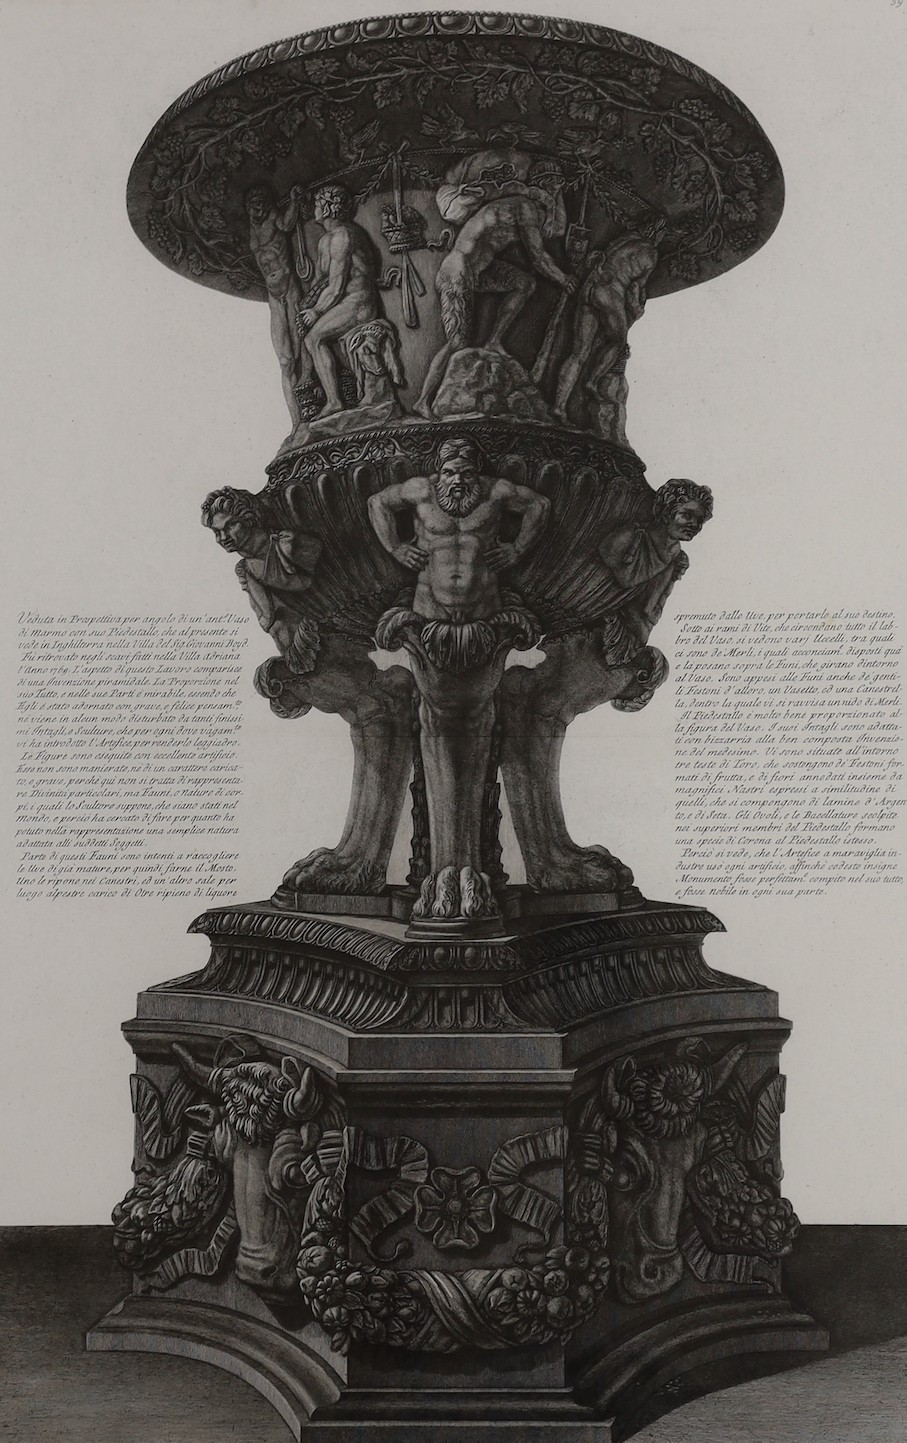 Piranesi , 'Vaso Antico di Marmo', 'Anto Vaso di Marmo', 'Vaso Antico di Marmo' and 'Aré del Tutto', four engravings, largest 75 x 48cm